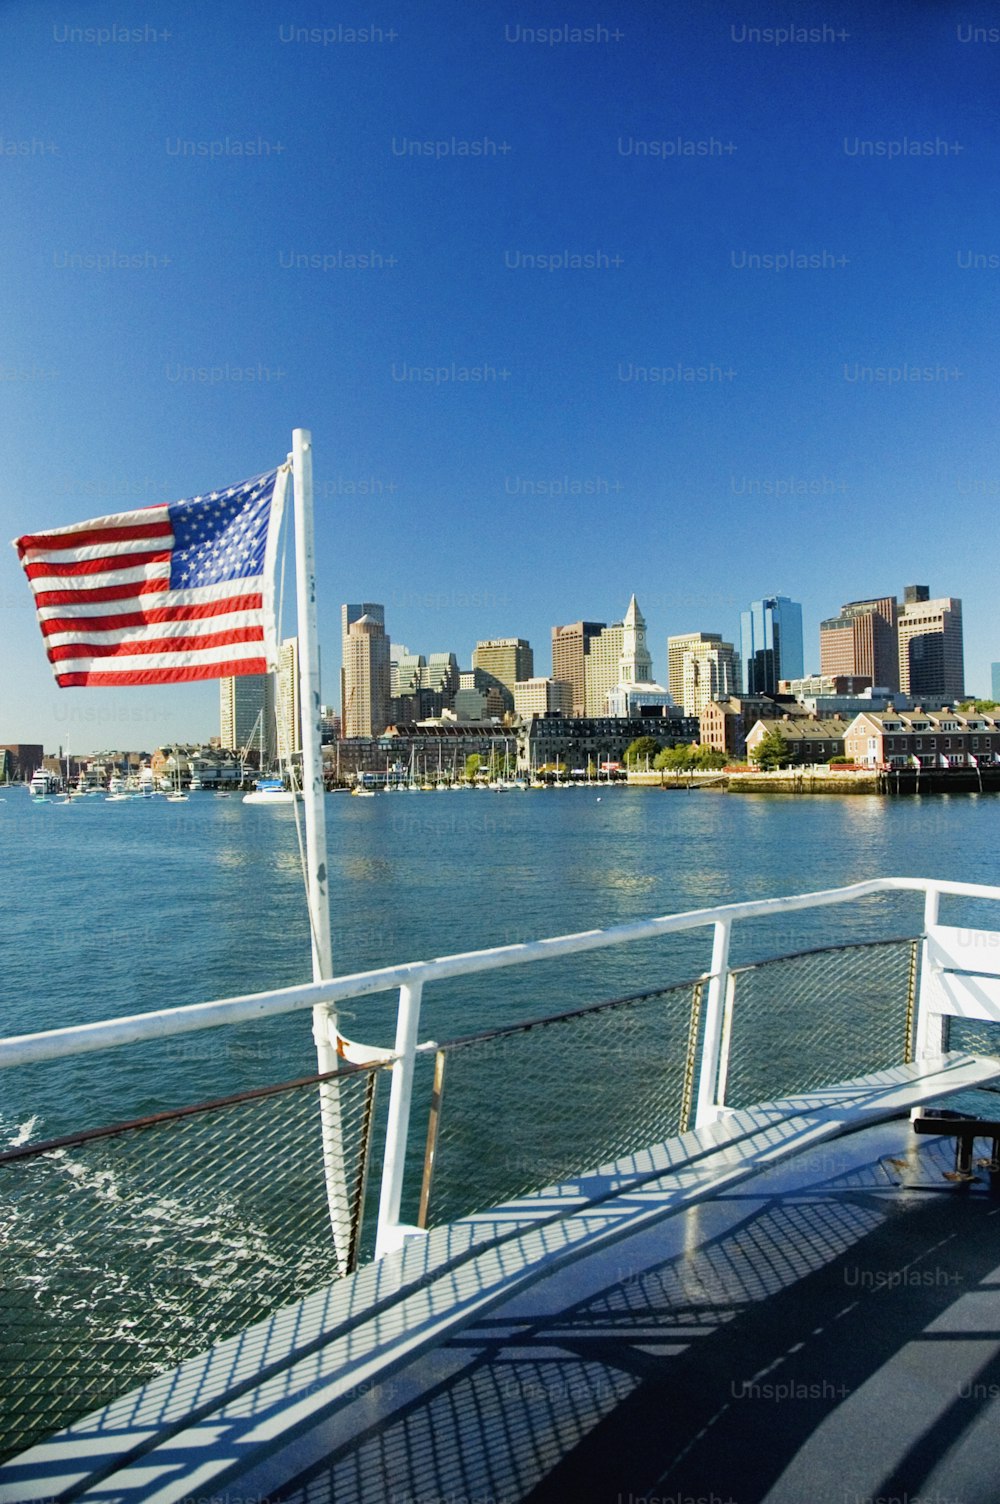 Una bandera estadounidense en un barco en el agua